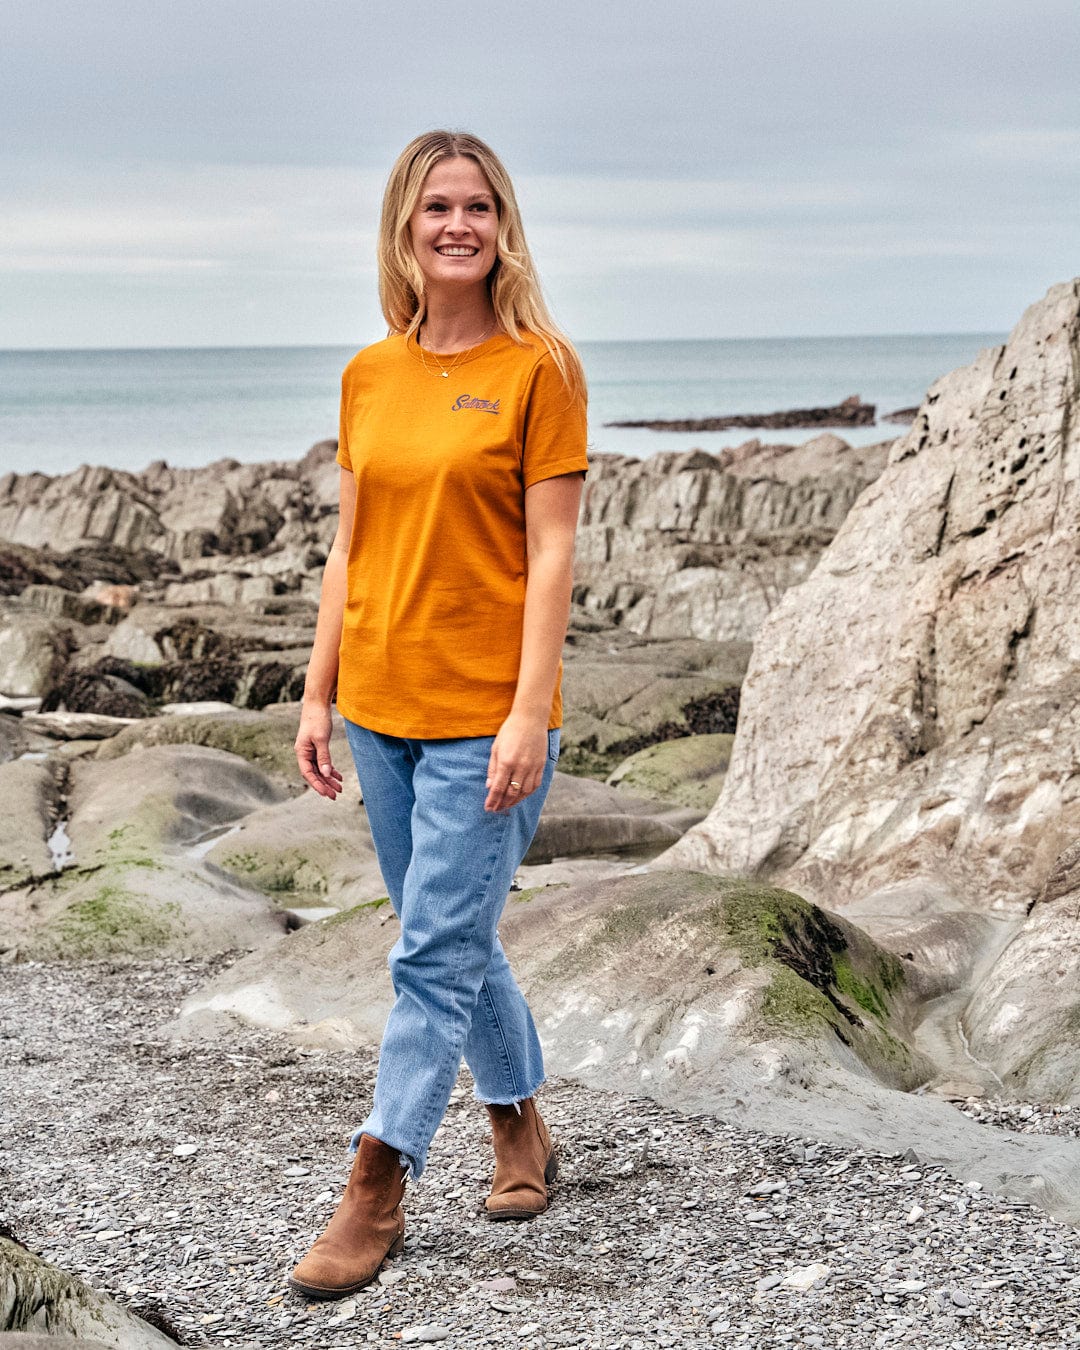 A woman in a Saltrock Womens Short Sleeve T-Shirt - Yellow, made of lightweight fabric, standing on a rocky beach.